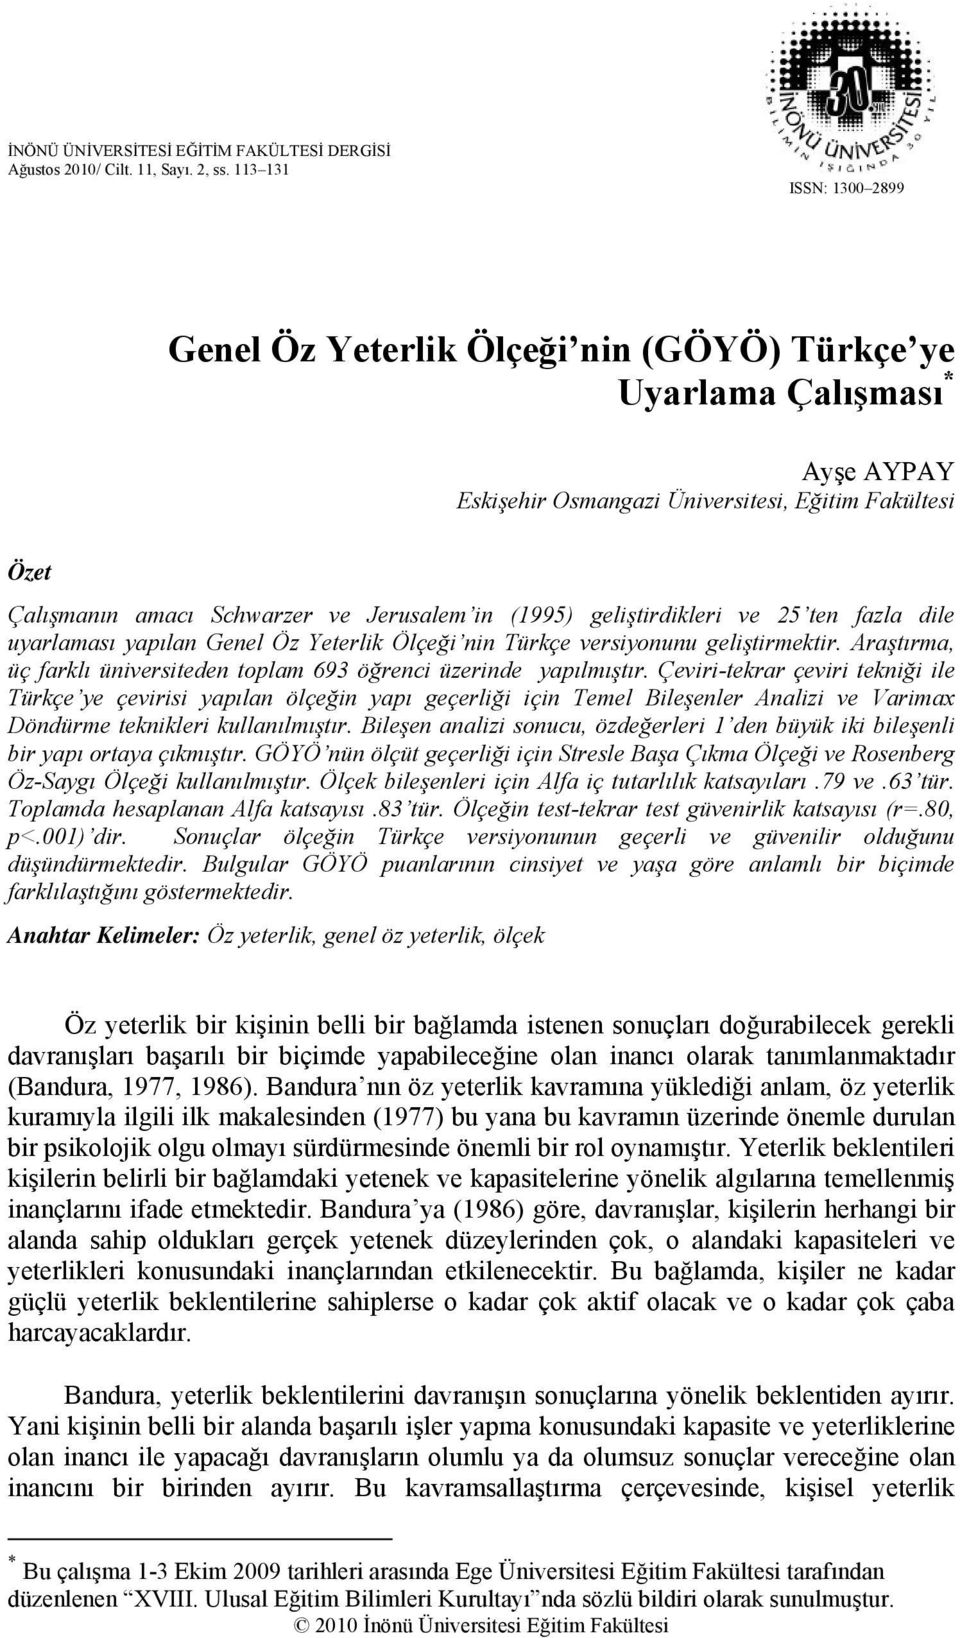 in (1995) geliştirdikleri ve 25 ten fazla dile uyarlaması yapılan Genel Öz Yeterlik Ölçeği nin Türkçe versiyonunu geliştirmektir.